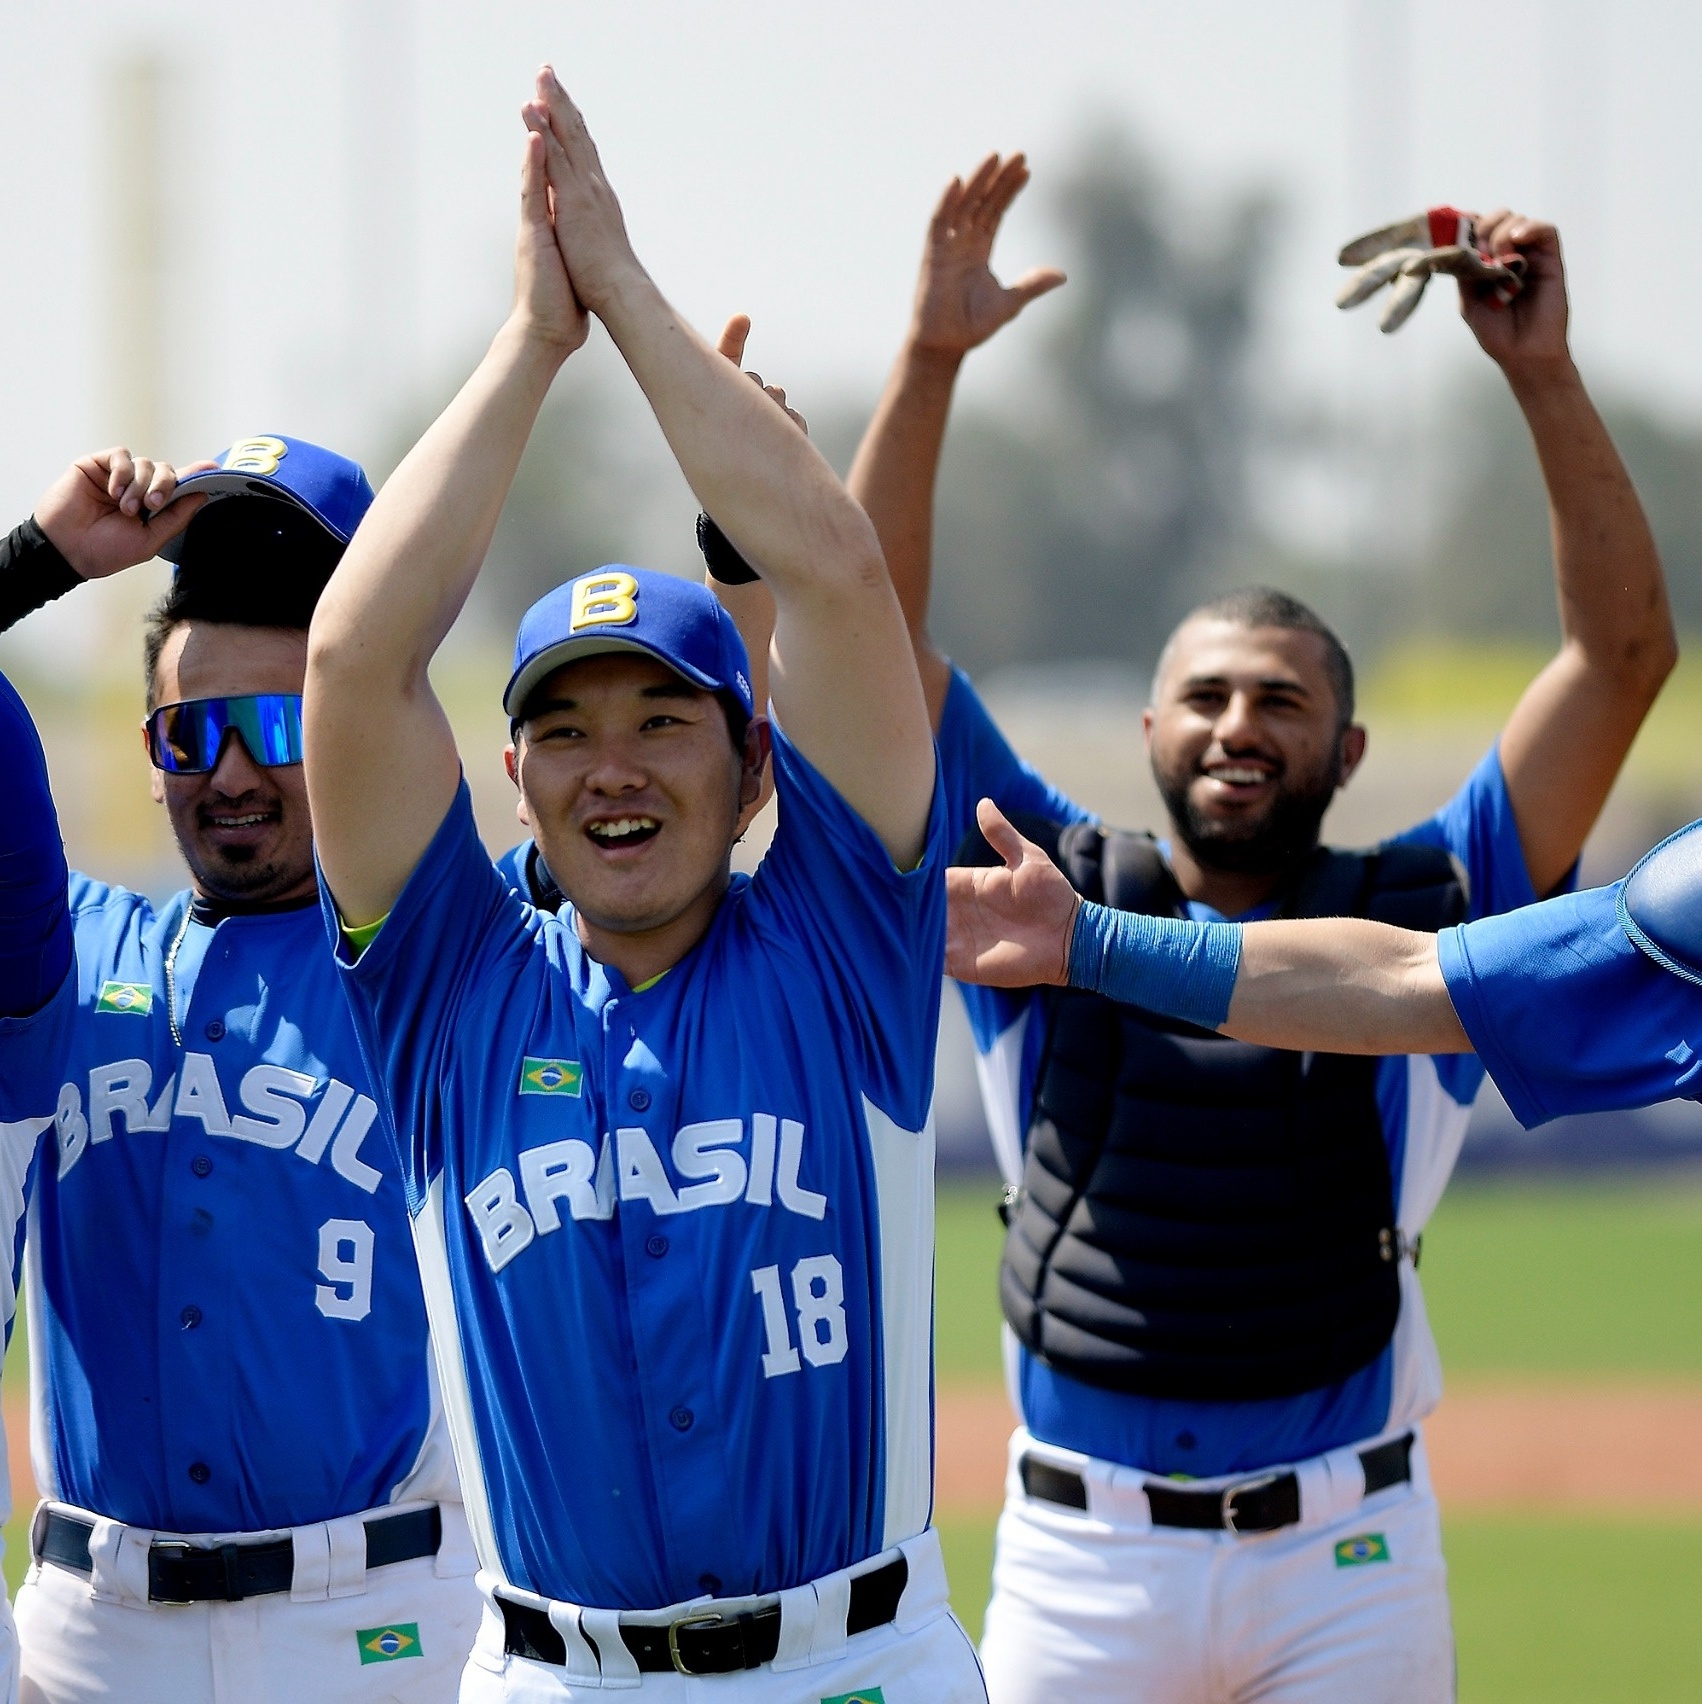 Brasileiros em Destaque no Beisebol das Grandes Ligas dos EUA